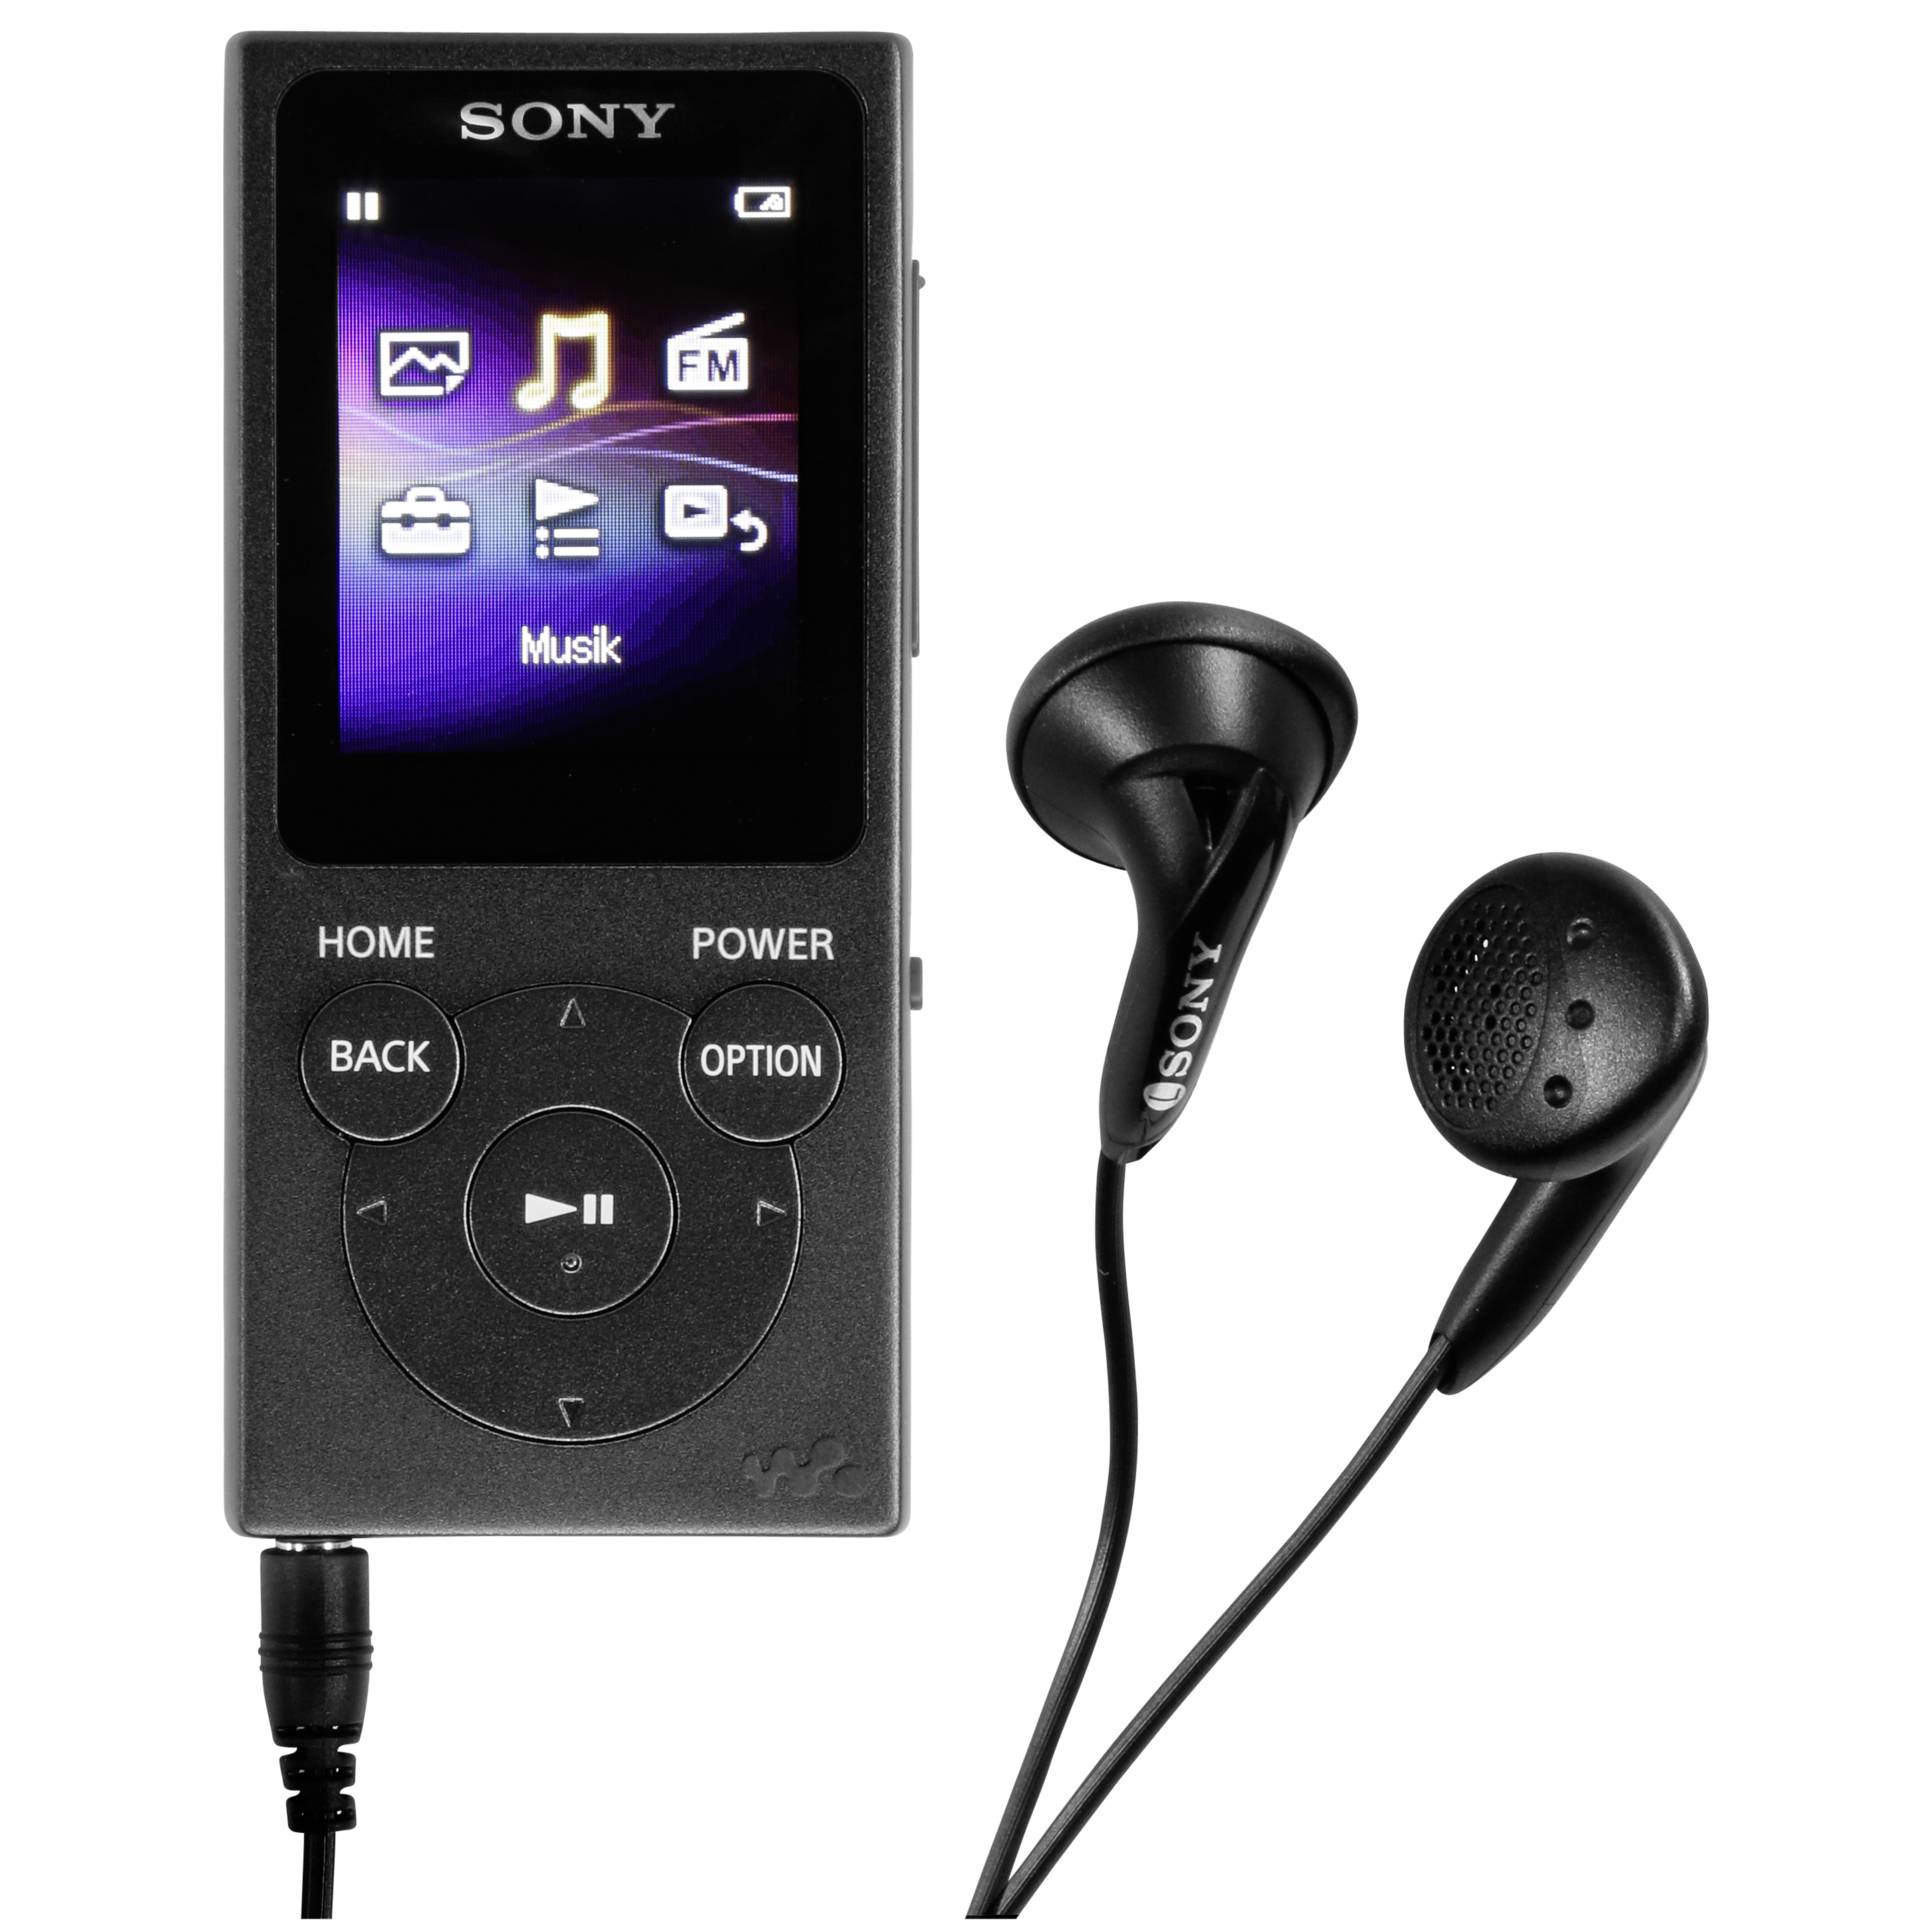 Sony -Walkman NW-E394 -Digitalplayer -8GB -5 cm Anzeige: 4 (77